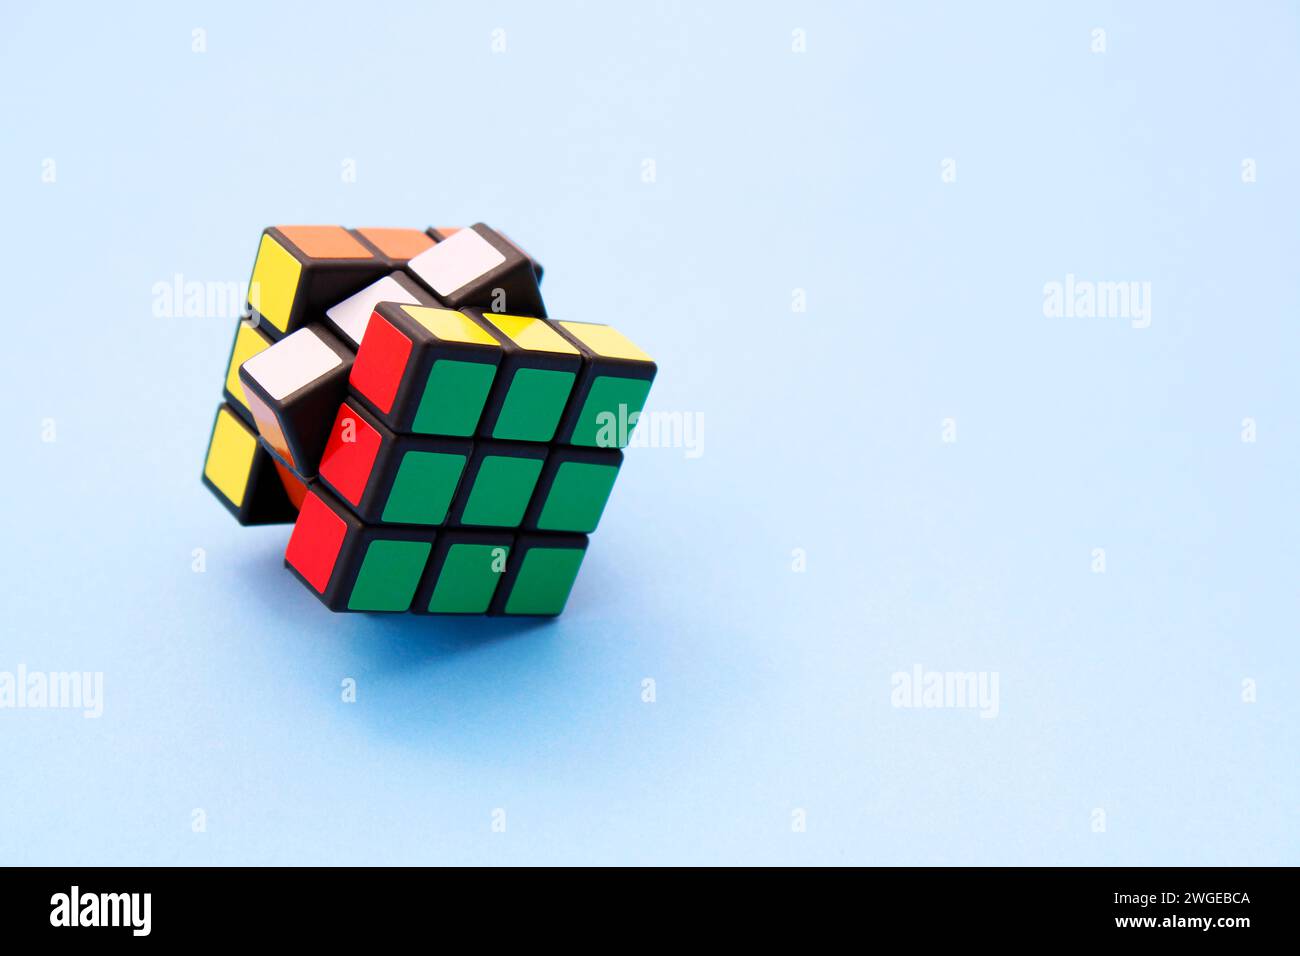 Cube Rubik's Cube coloré avec axes pivotés Banque D'Images